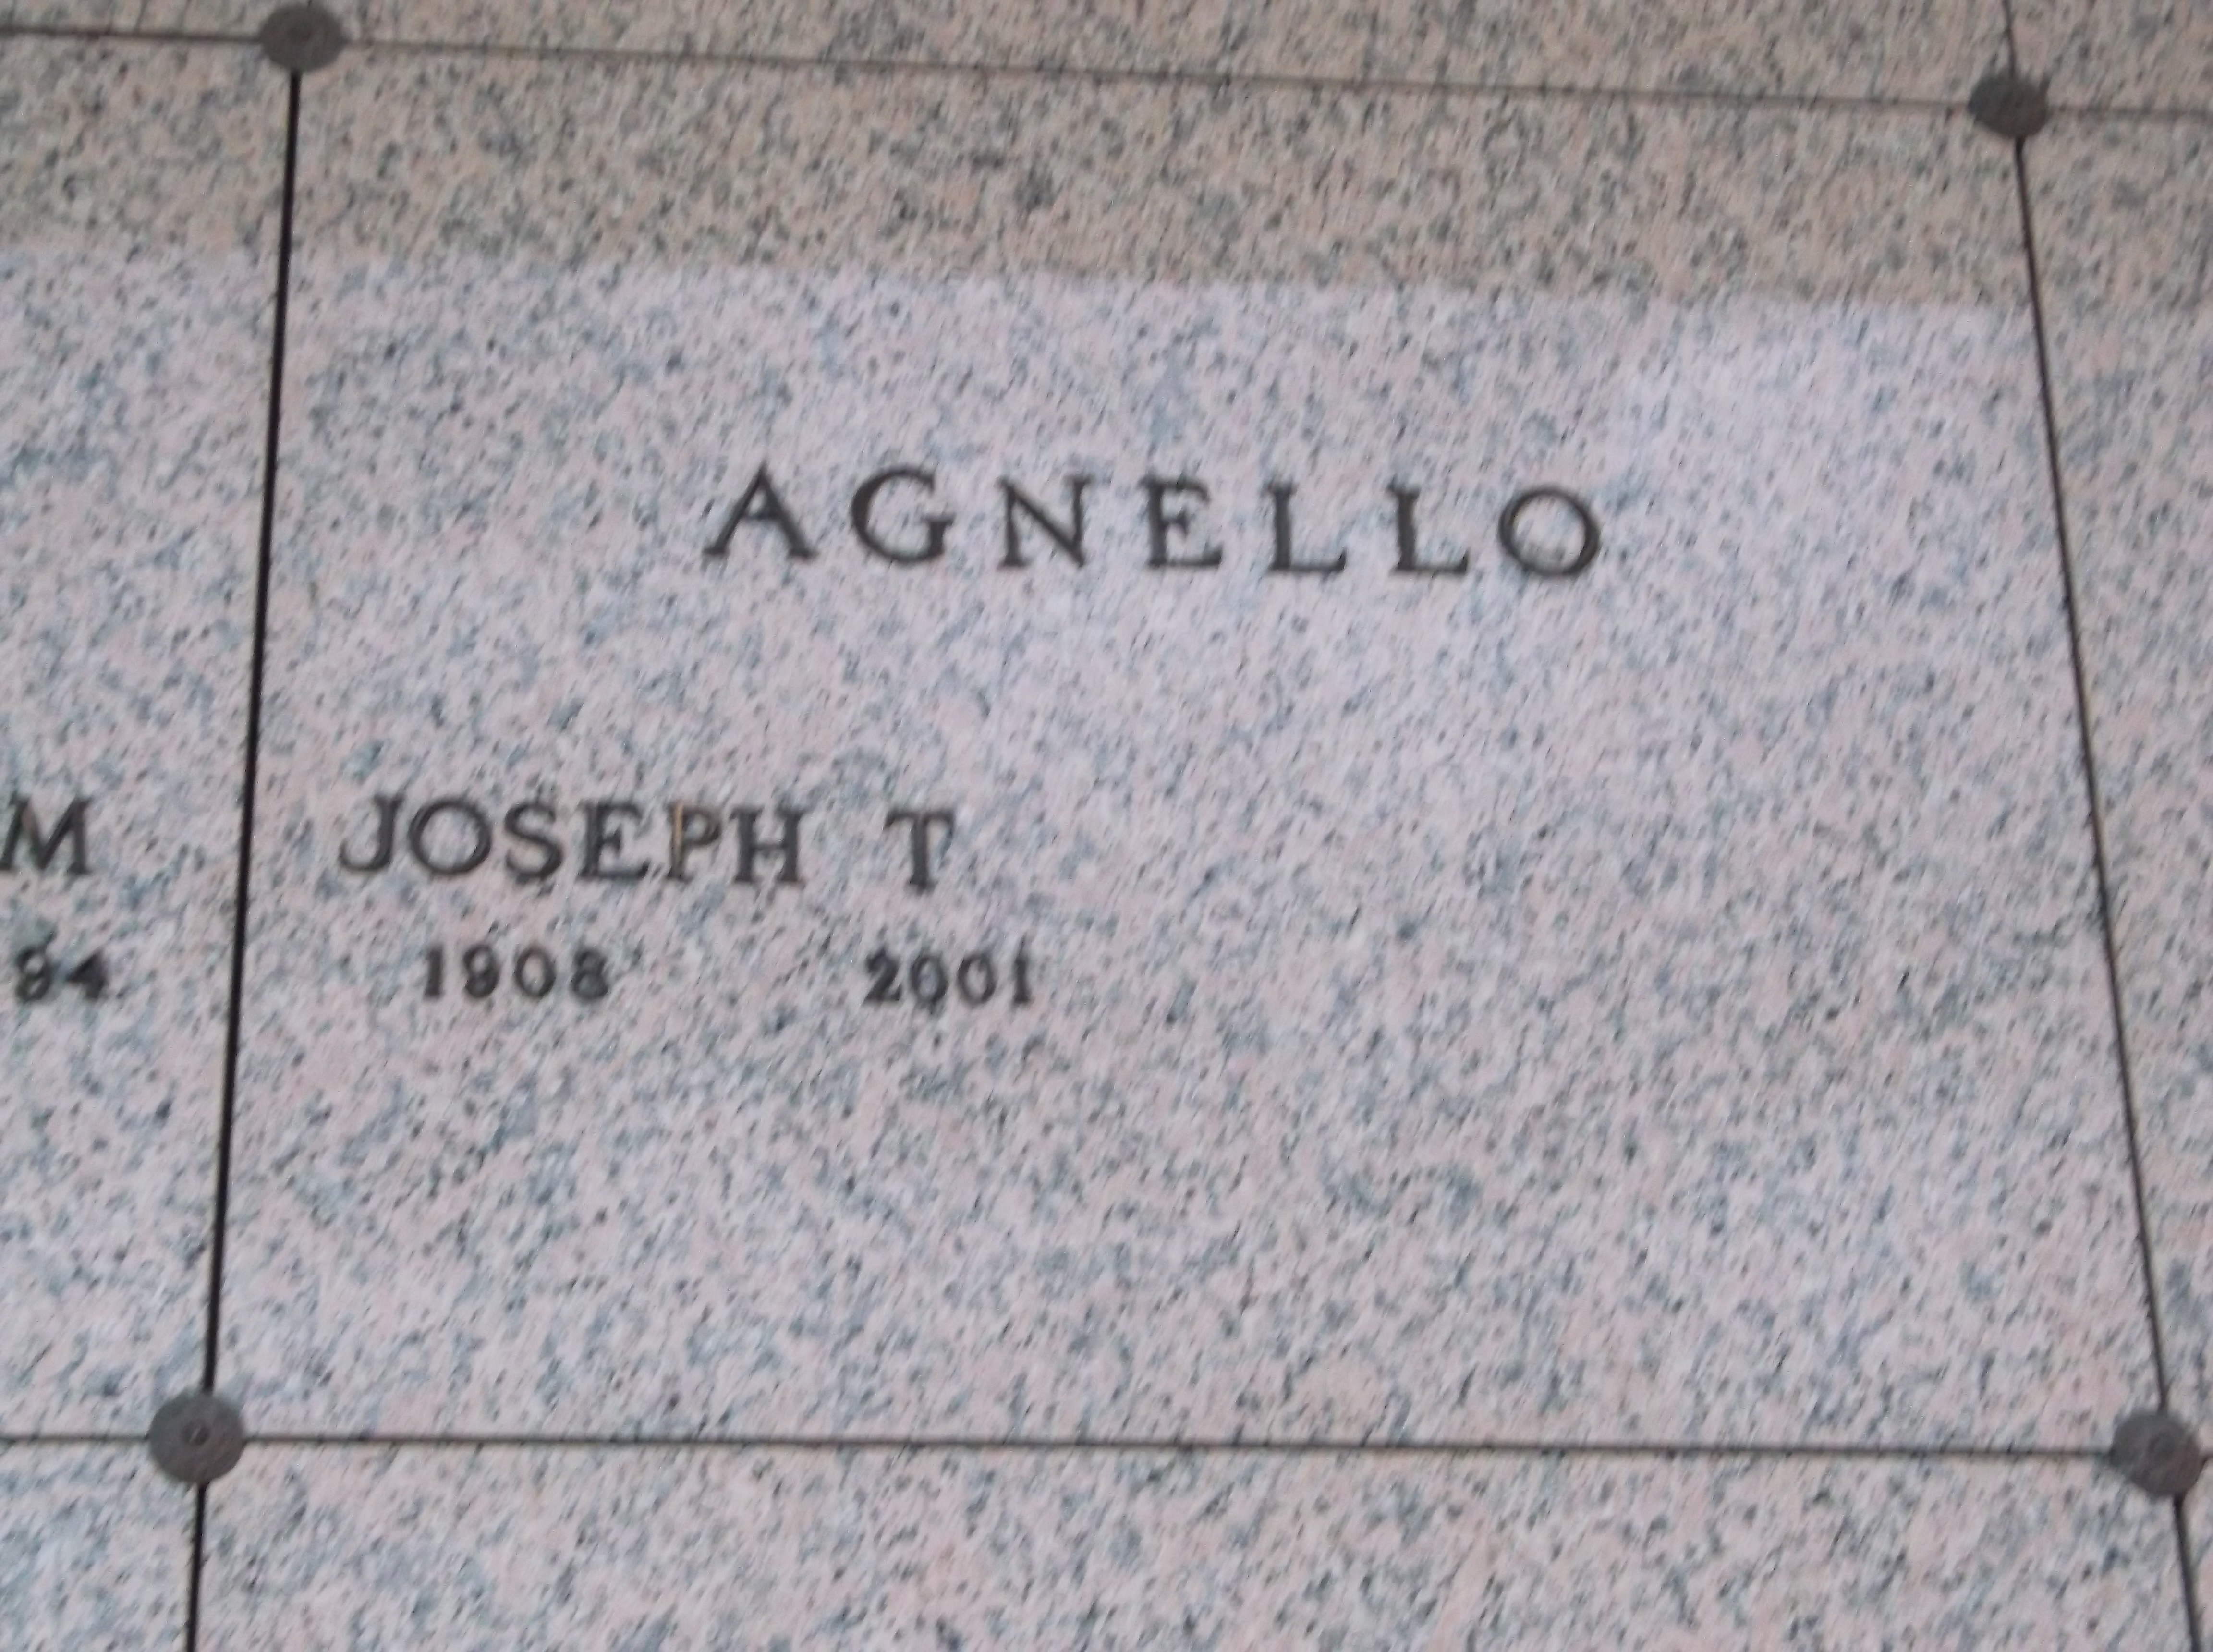 Joseph T Agnello